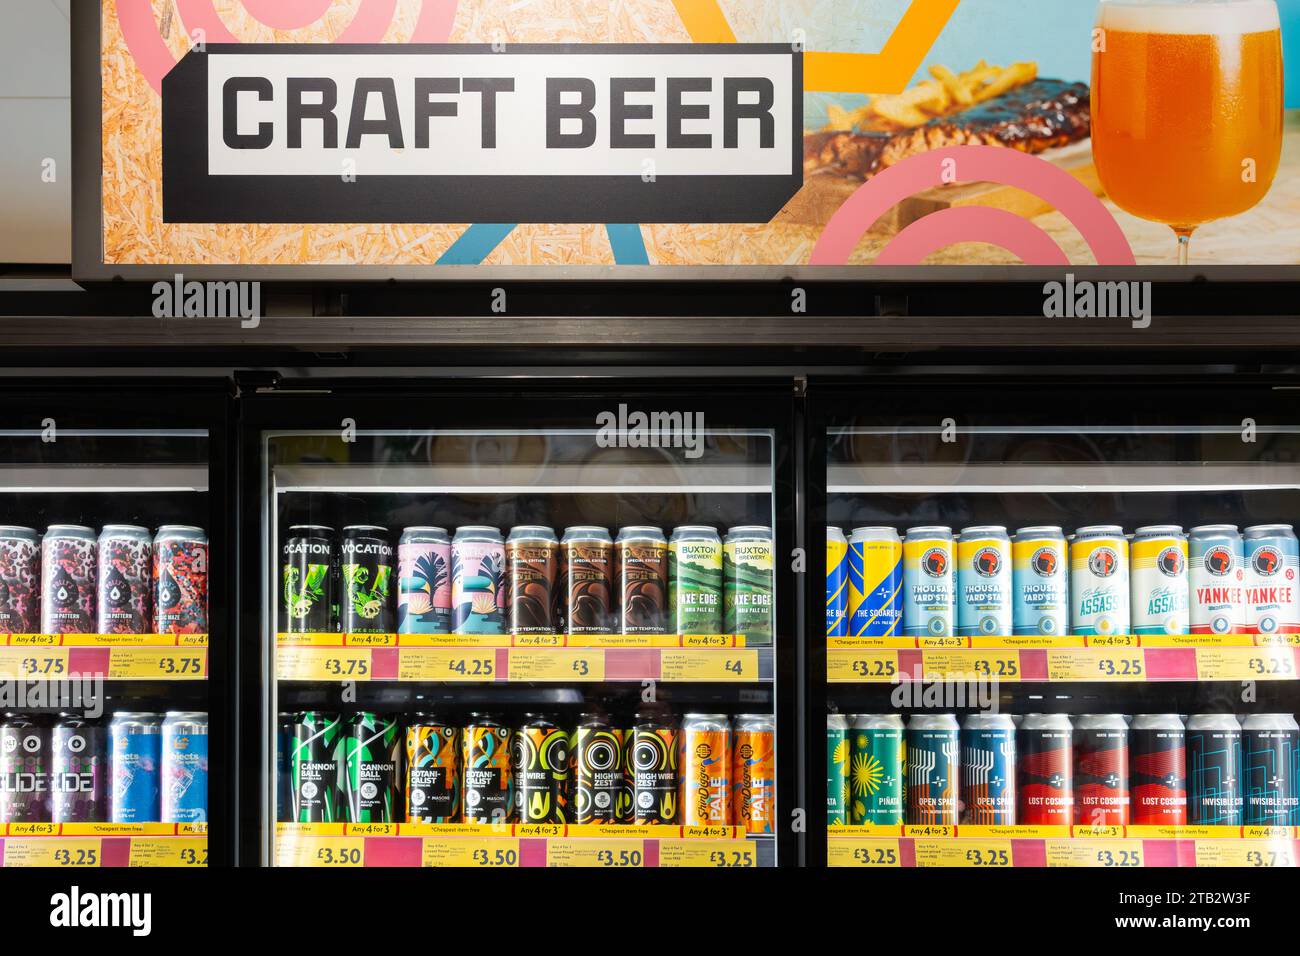 Une collection diversifiée de bières artisanales froides en canettes, avec un panneau publicitaire de bière artisanale ci-dessus, dans des réfrigérateurs en vente au supermarché Morrisons, en Angleterre Banque D'Images